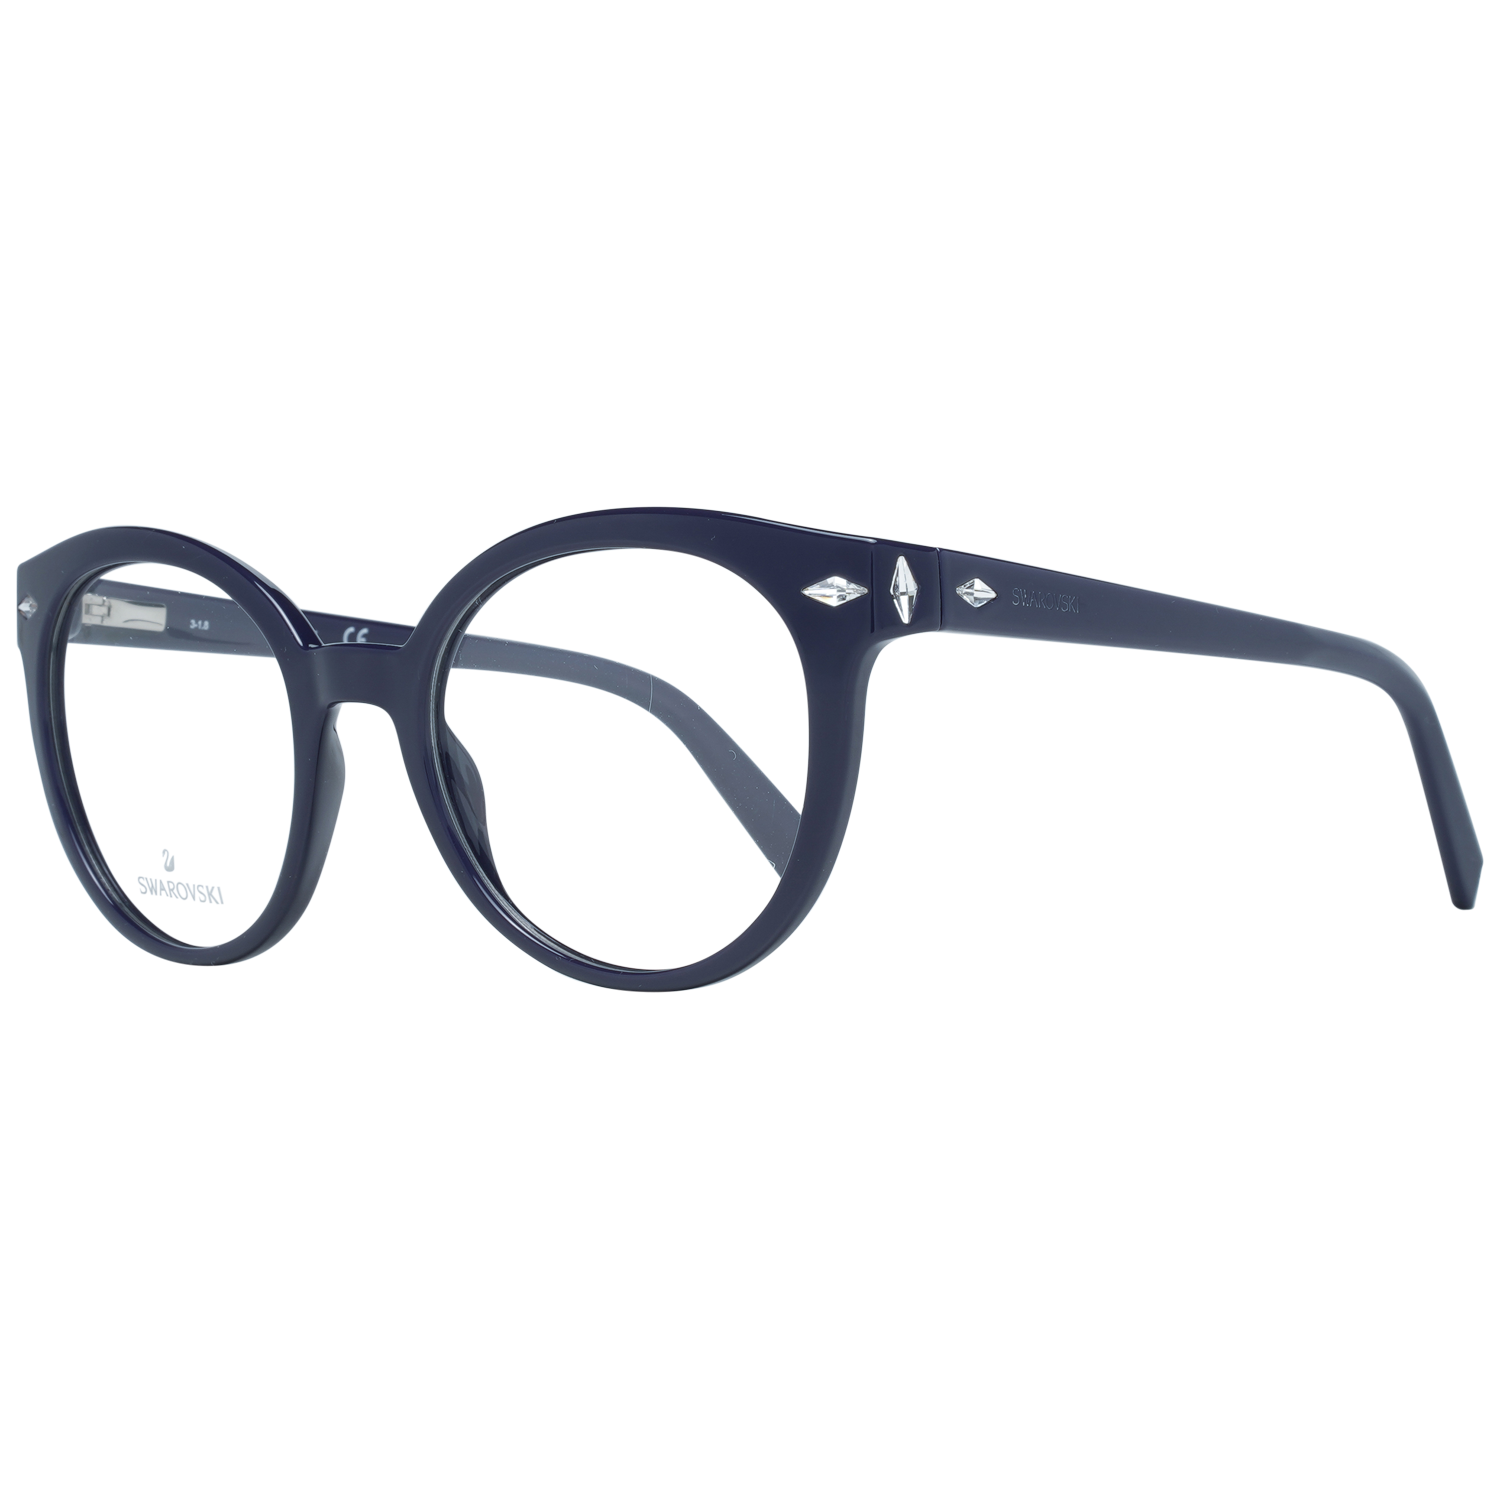 Swarovski Frames Swarovski Women Glasses Optical Frame SK5272 081 50 Eyeglasses Eyewear UK USA Australia 